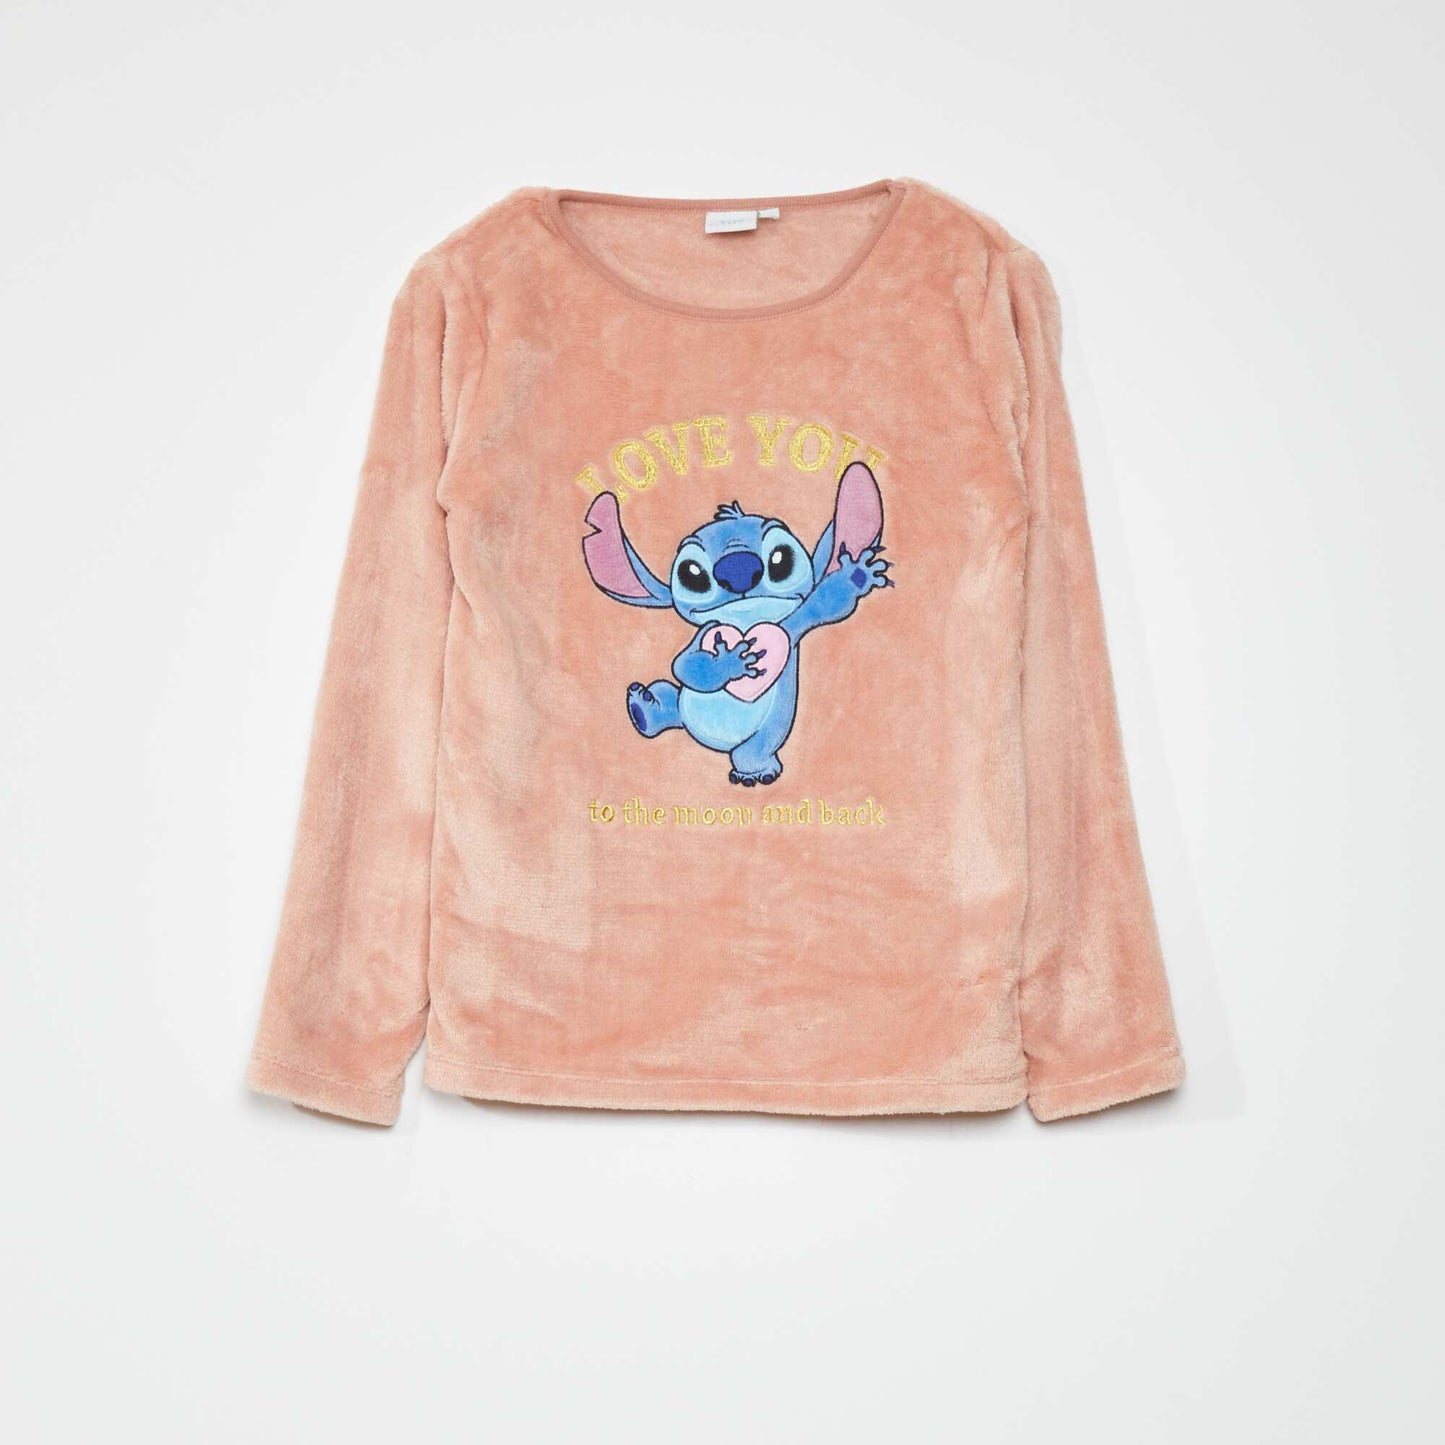 Ensemble pyjama t-shirt + pantalon 'Stitch' - 2 pi ces Rose